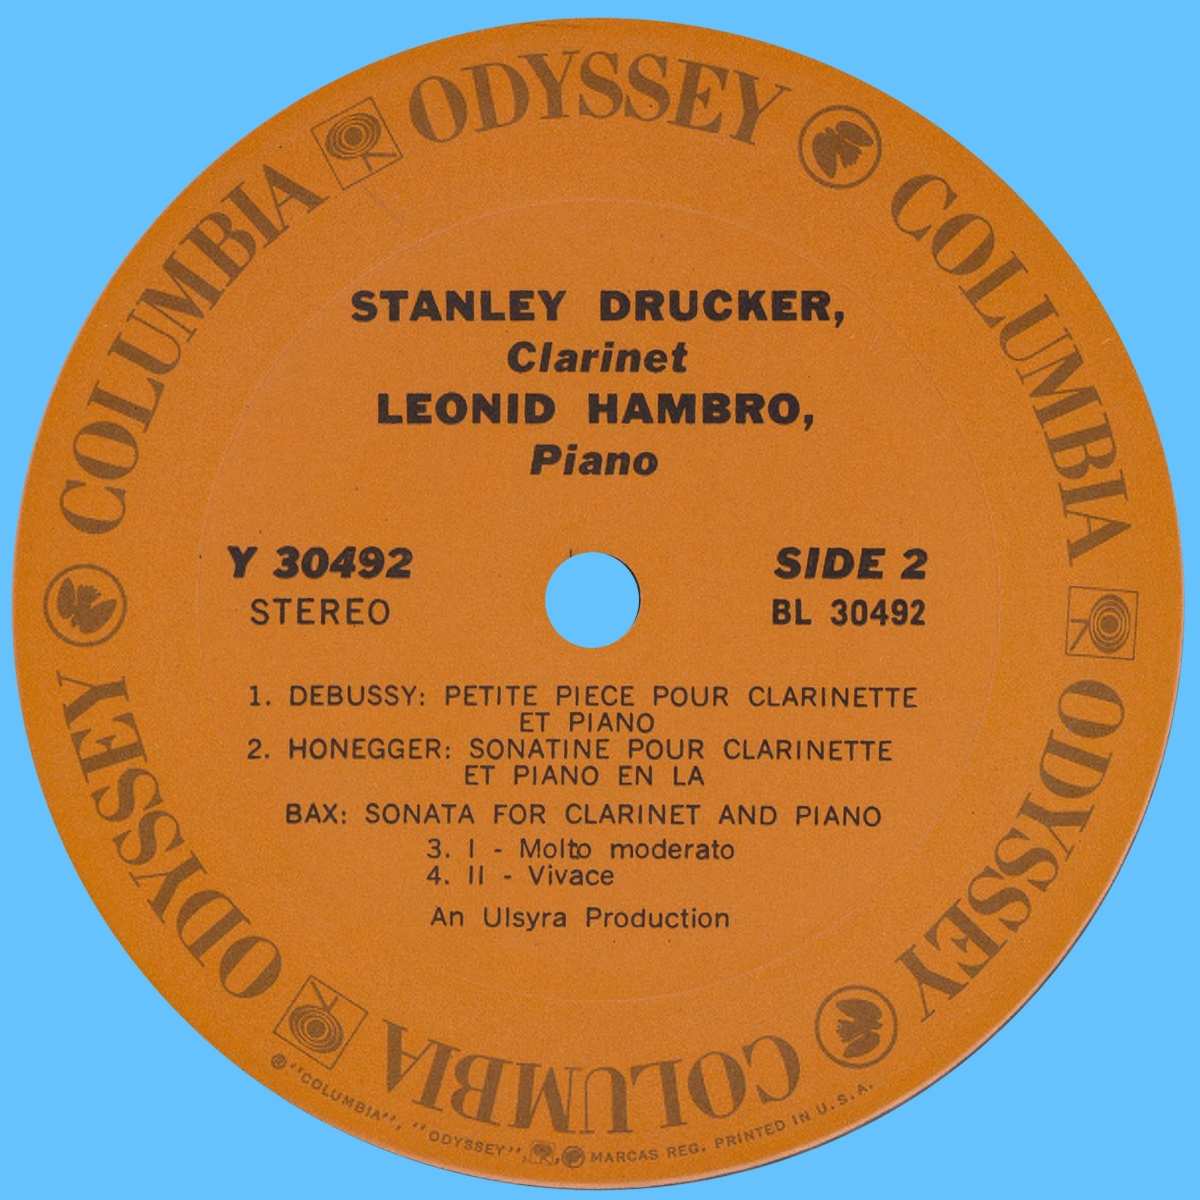 Étiquette verso du disque Odyssey Y 30492